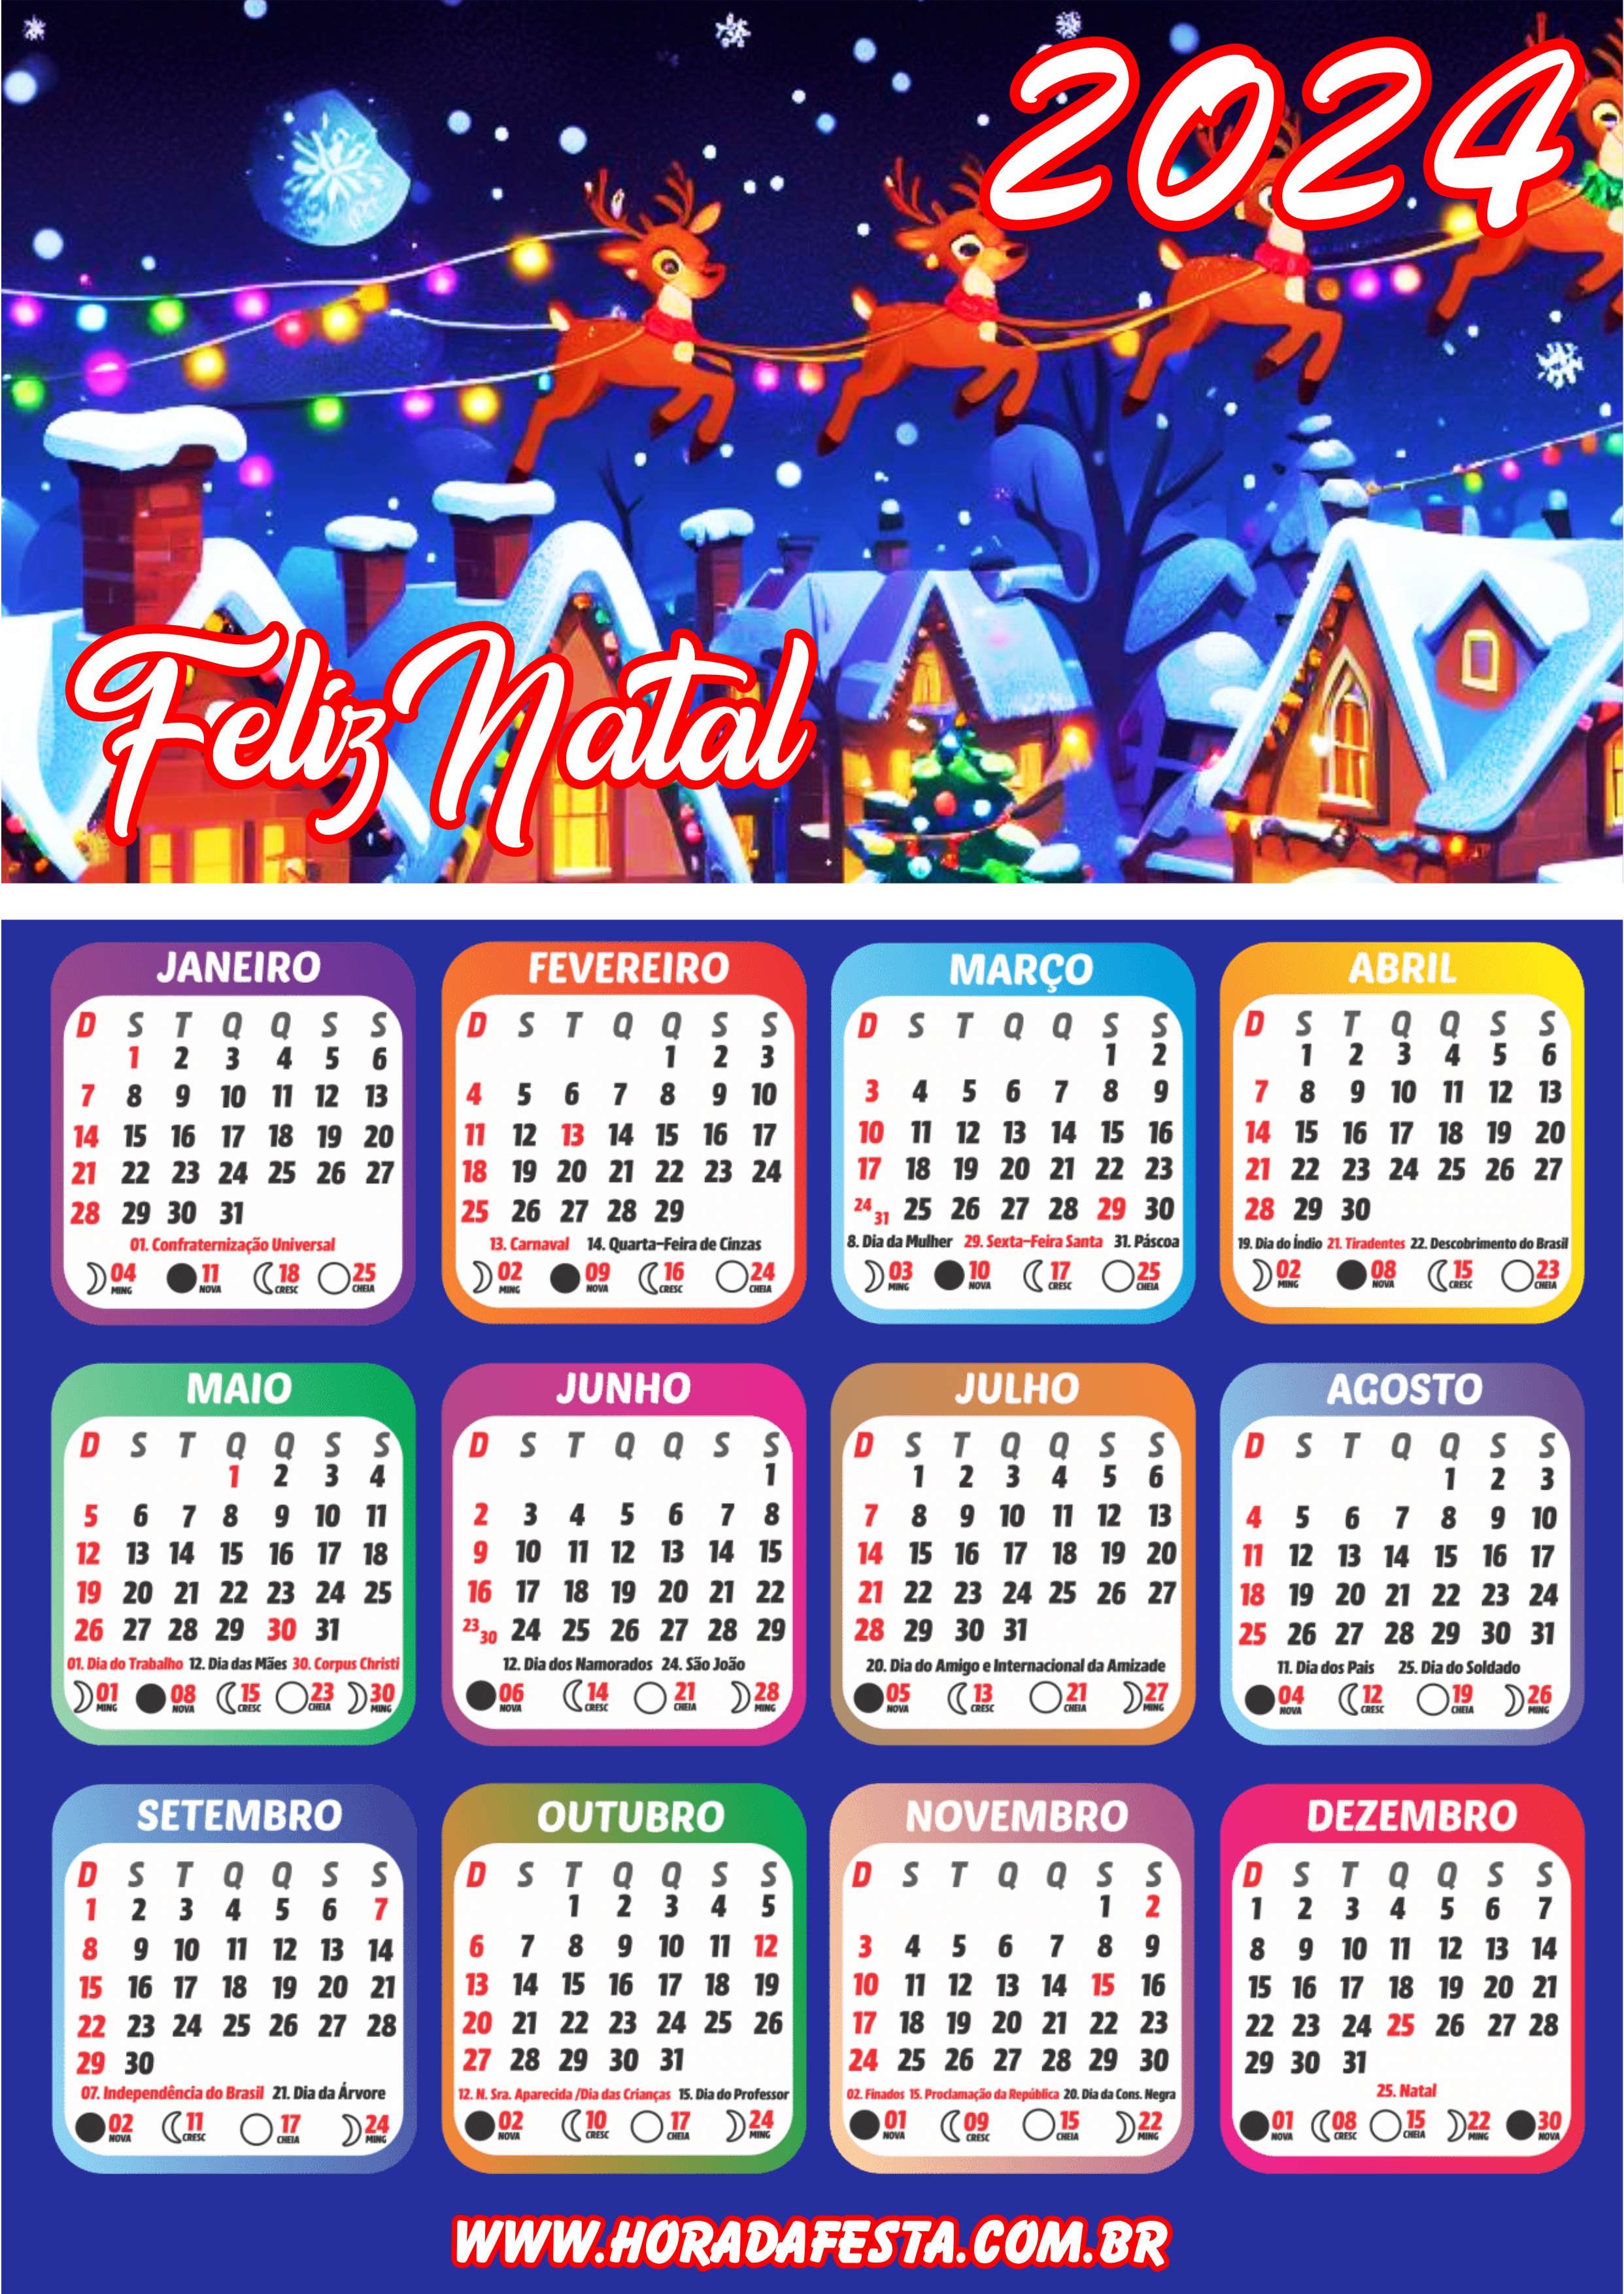 Feliz natal noite feliz calendário 2024 artigos de papelaria renda extra com personalizados artes gráficas png